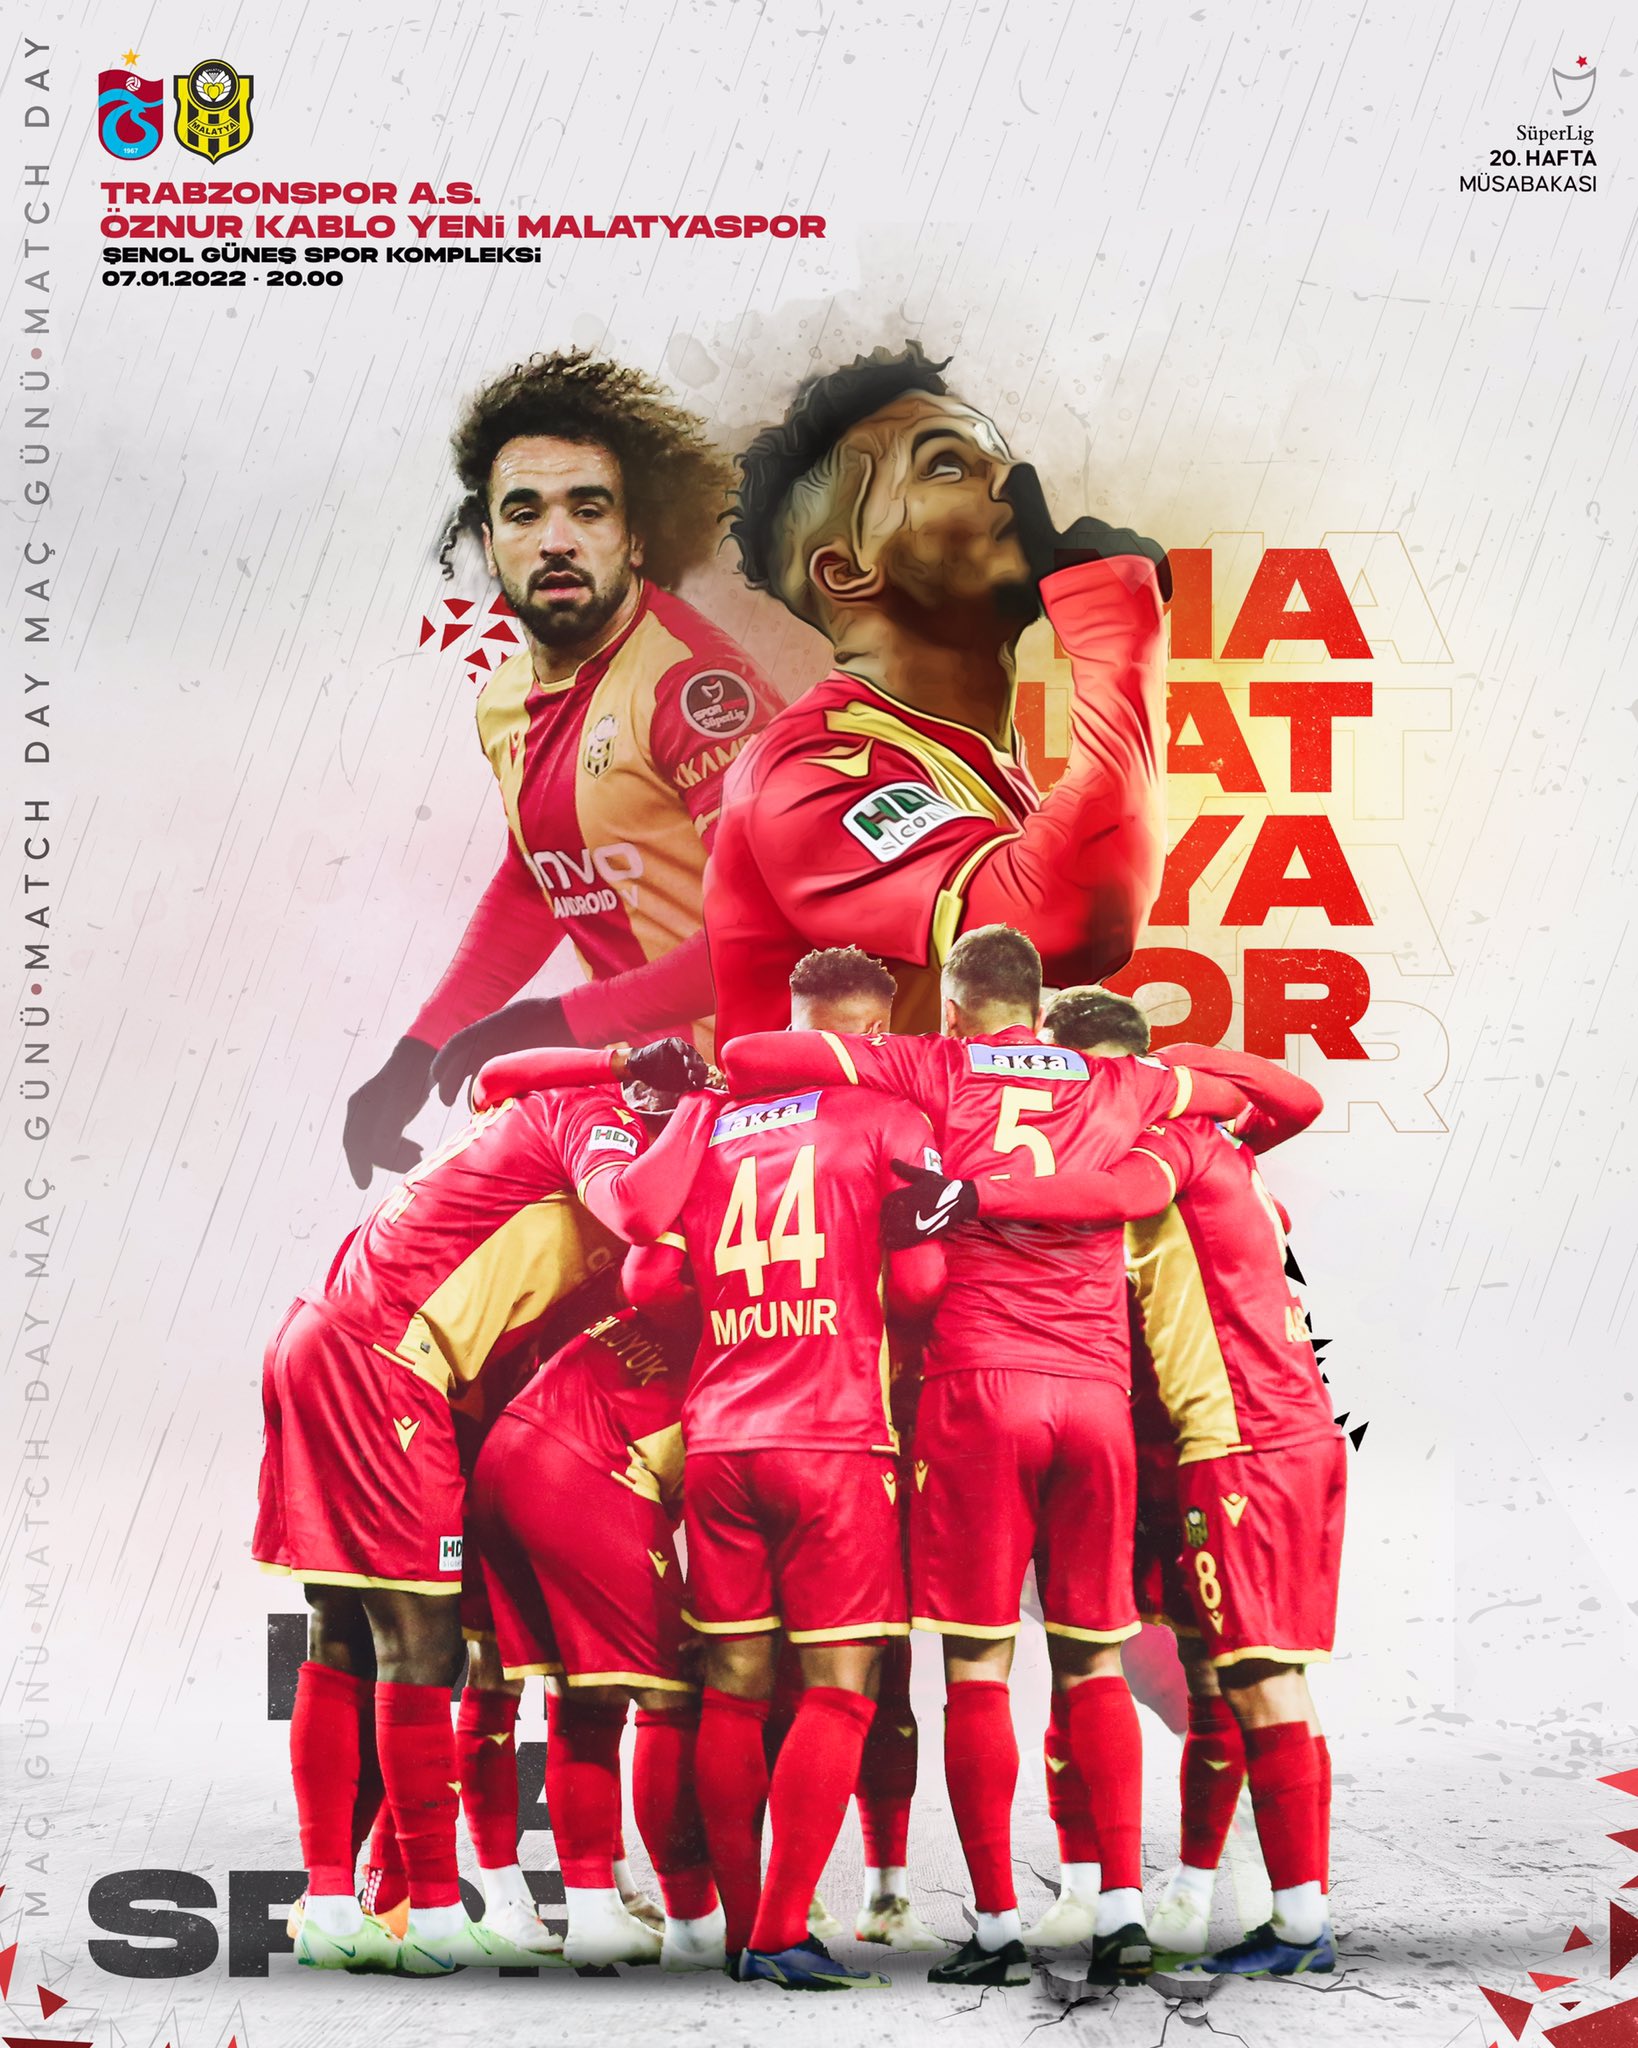 Malatyaspor'un Trabzonspor Maçına Özel Hazırladığı Maç Görseli